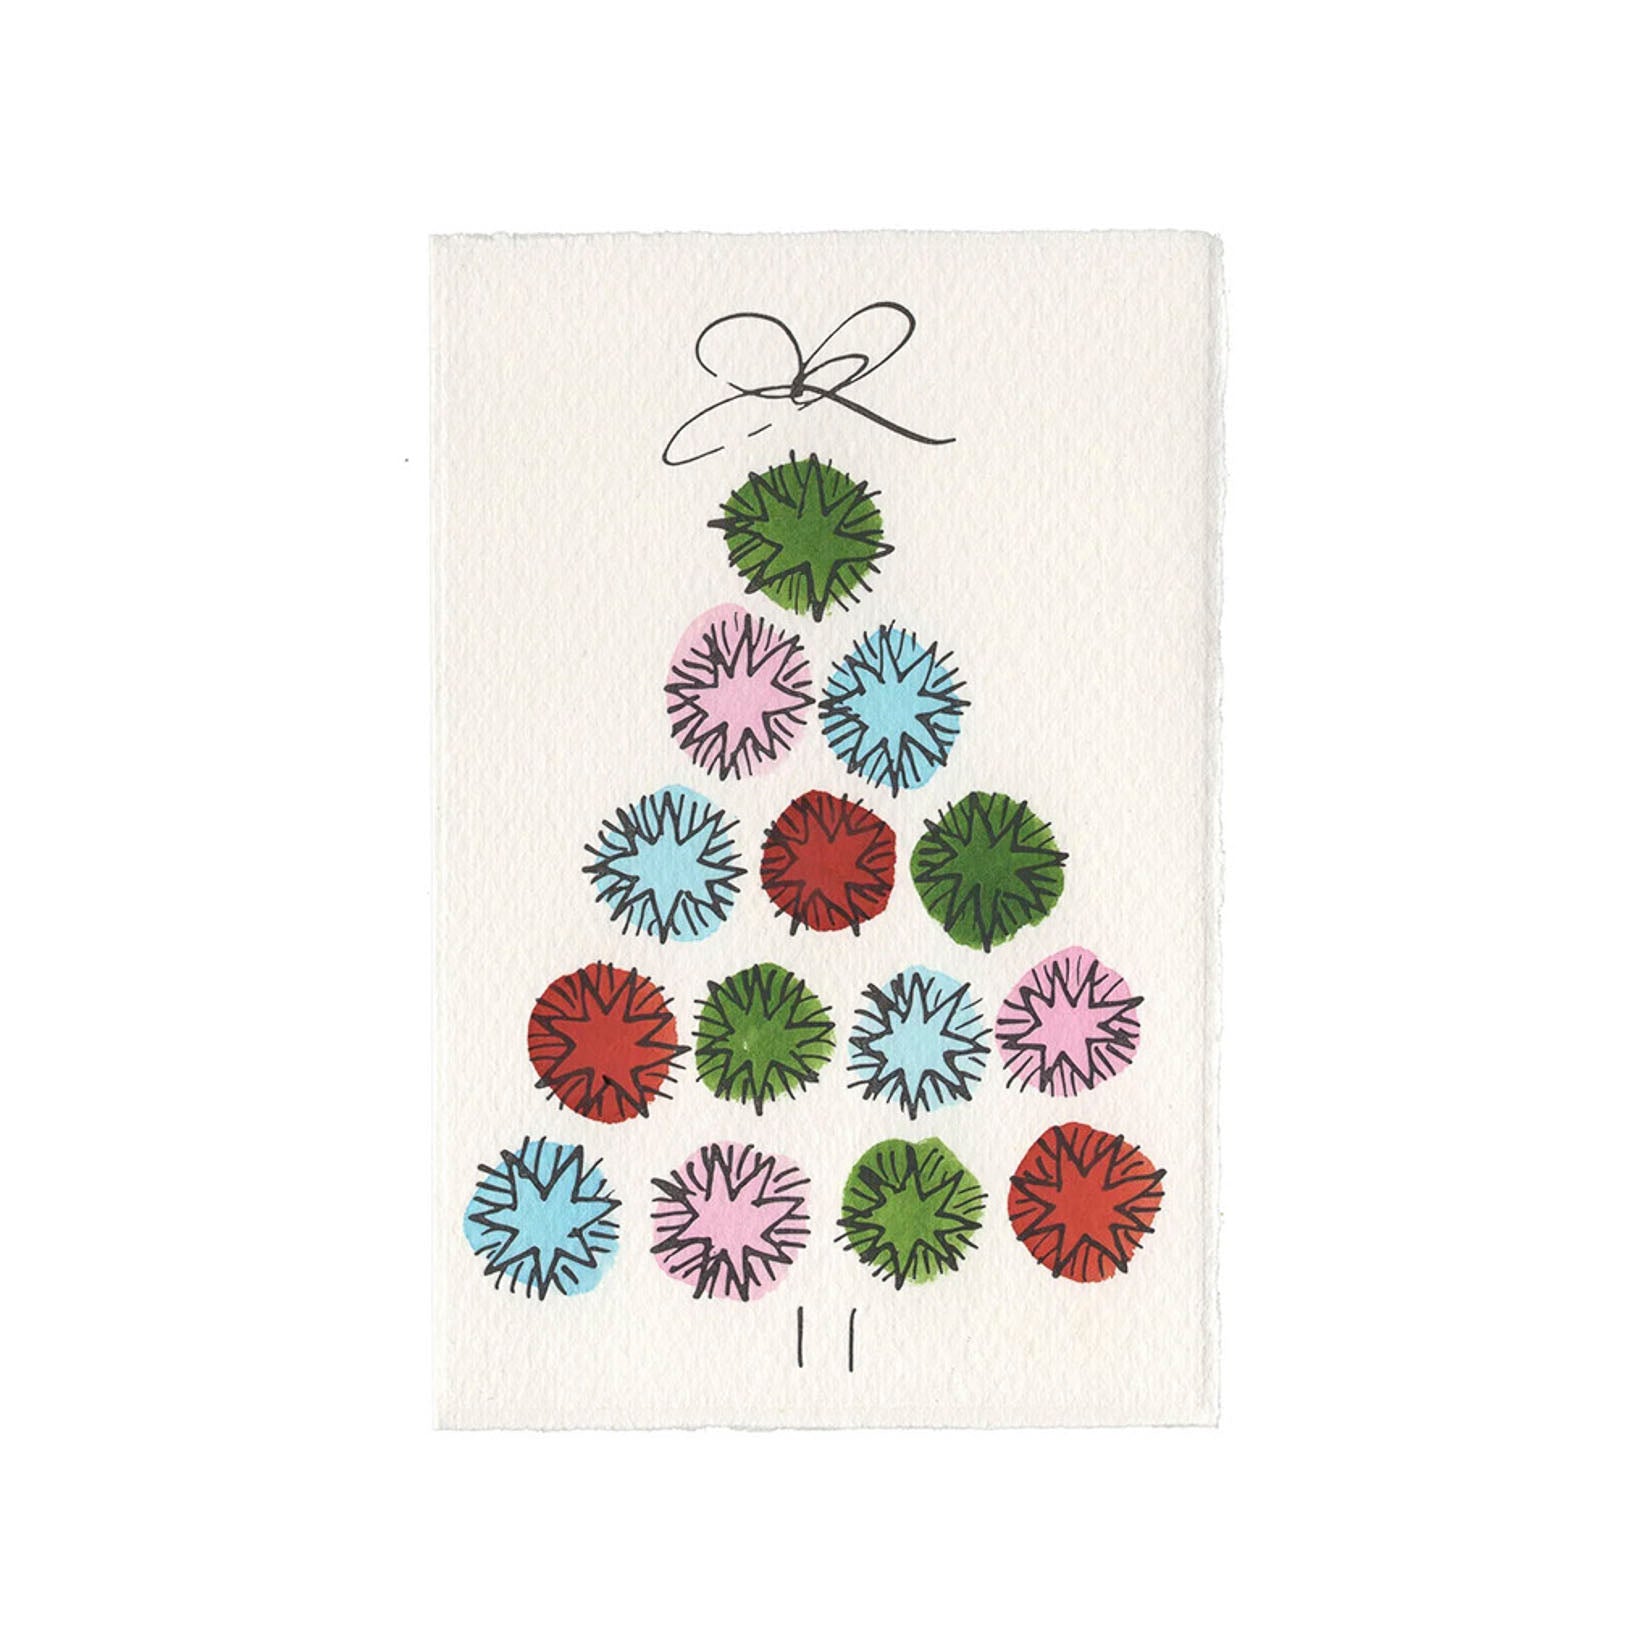 Weihnachtsbaum aus Sternen in Kreisen als schwarze Strichzeichnung, handkoloriert mit Aquarellfarben, gedruckt auf Büttenpapier